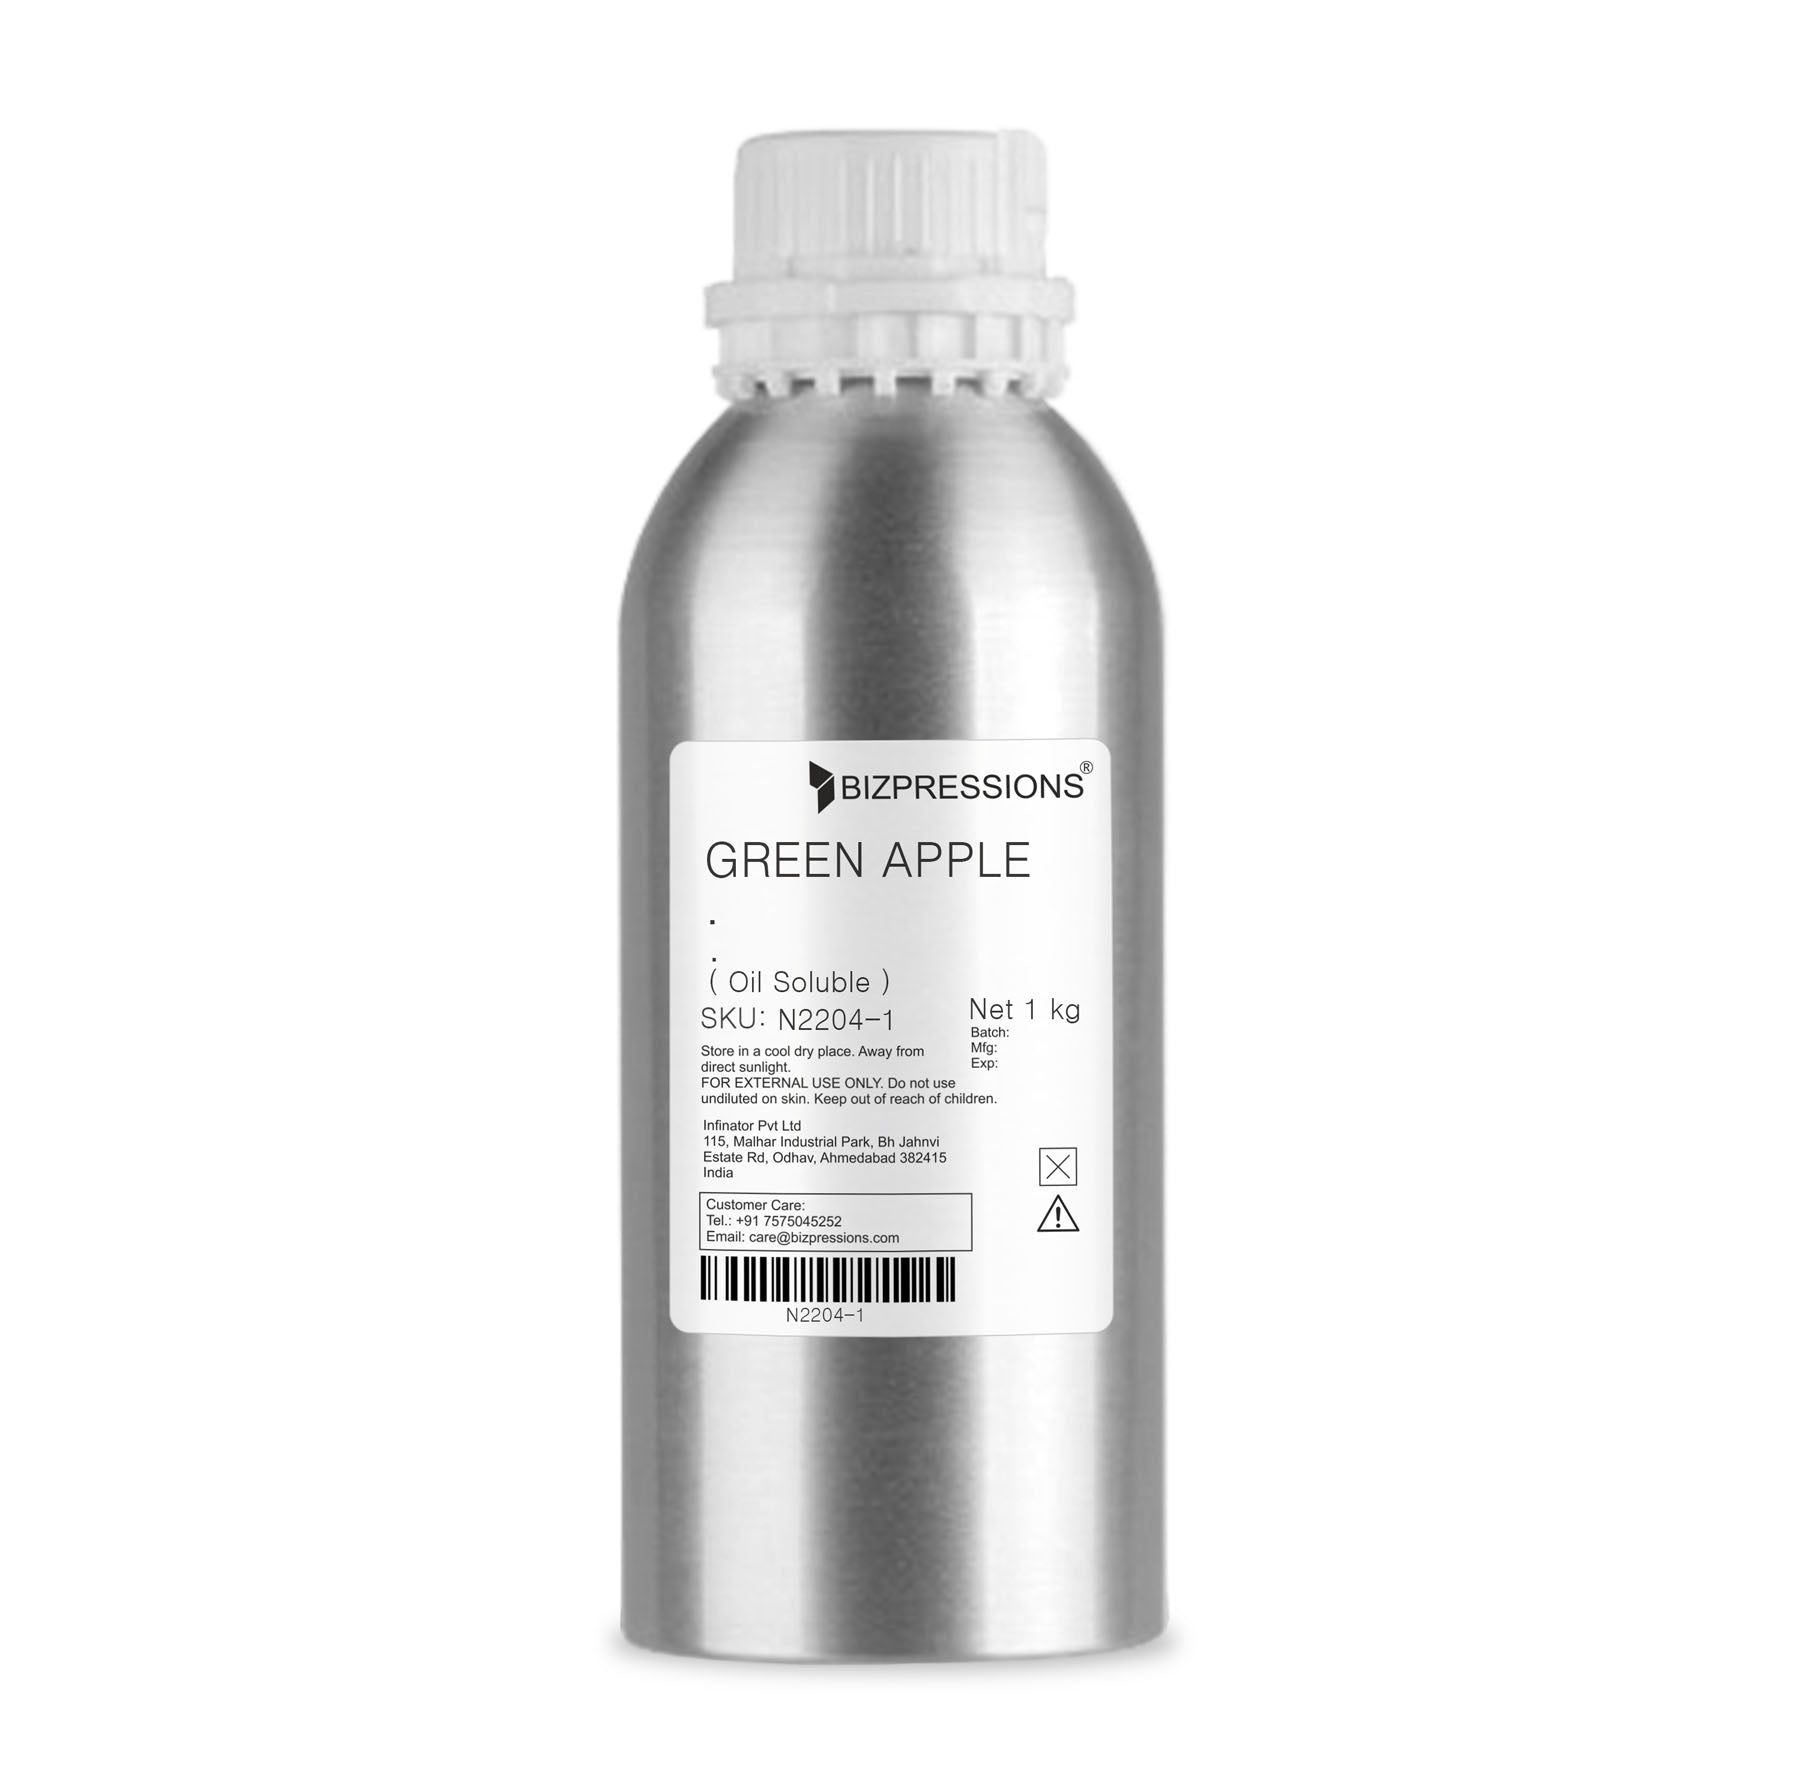 GREEN APPLE - Fragrance ( Oil Soluble ) - 1 kg